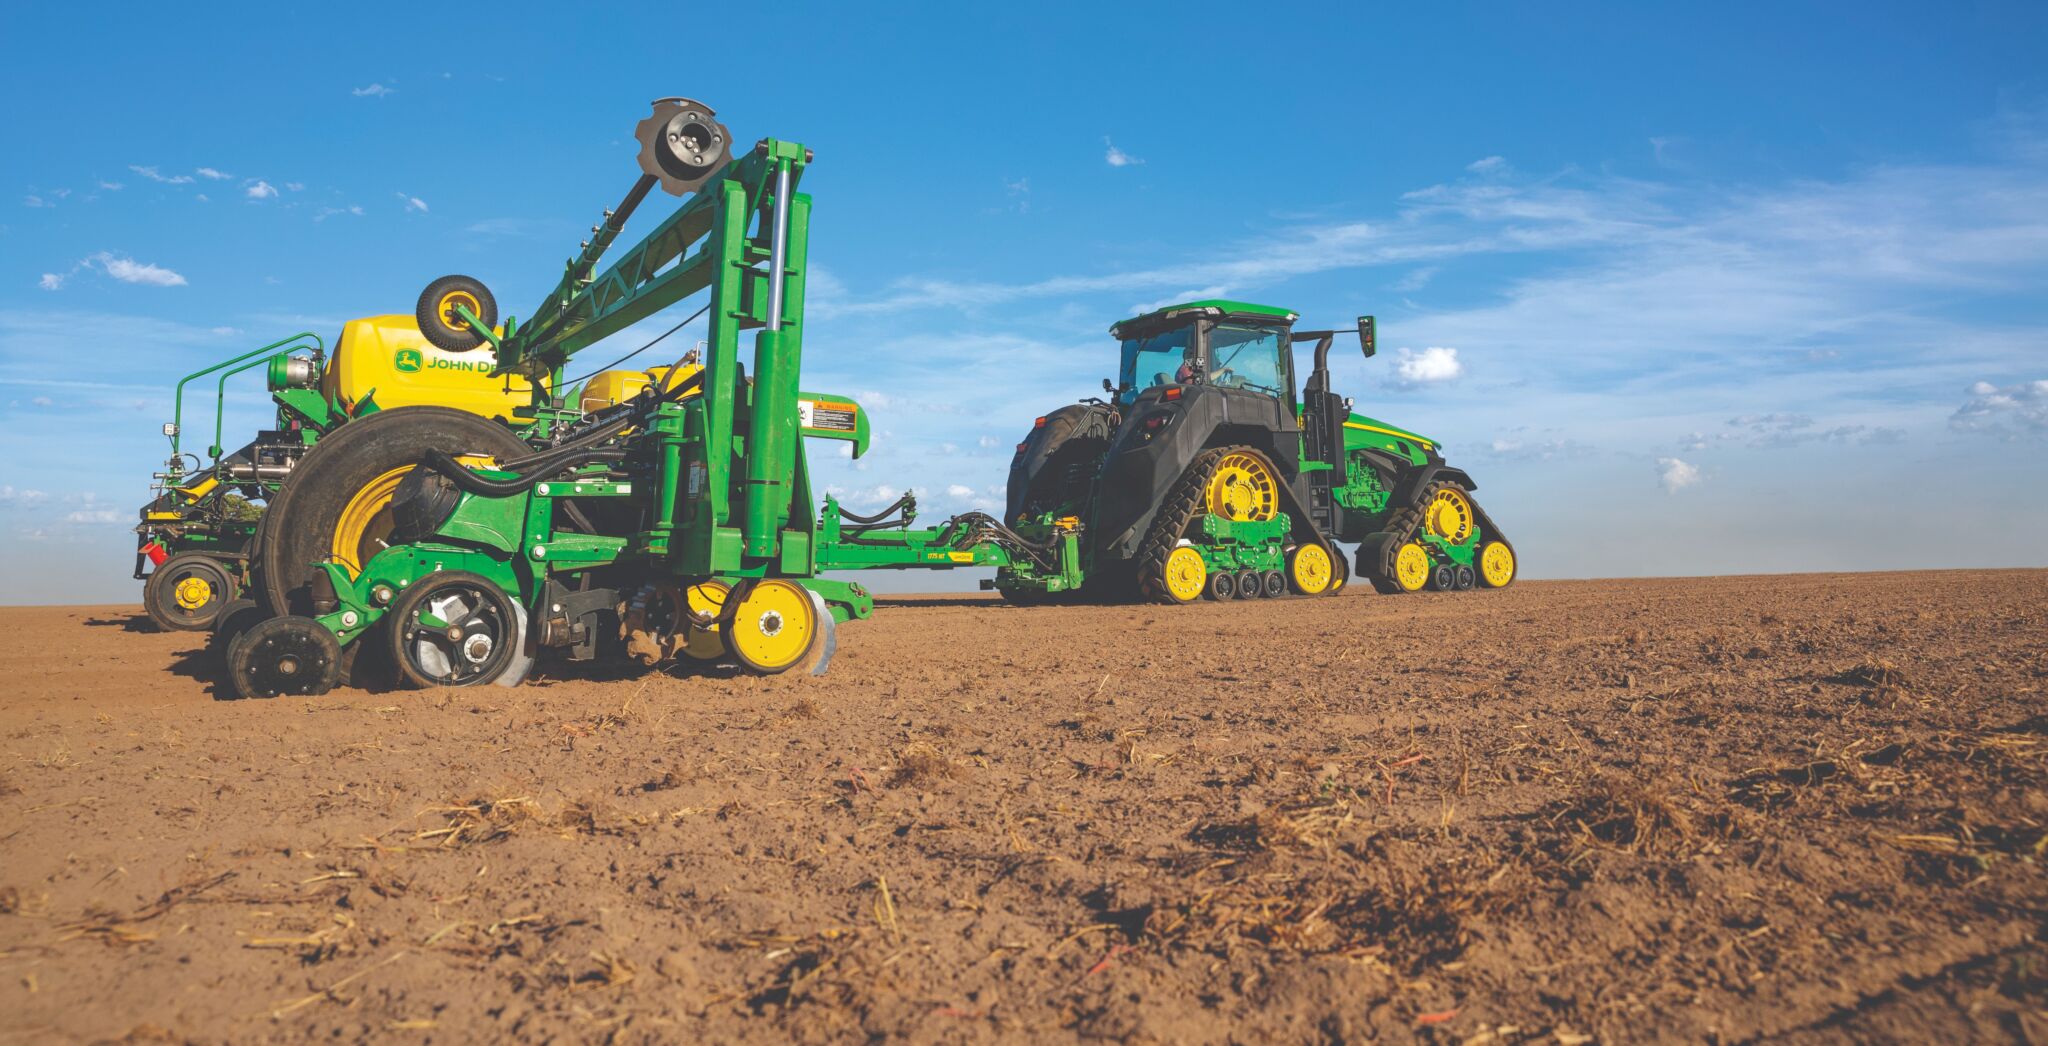 John Deere stellt Elektro-Traktor für emissionsfreie Landwirtschaft vor 